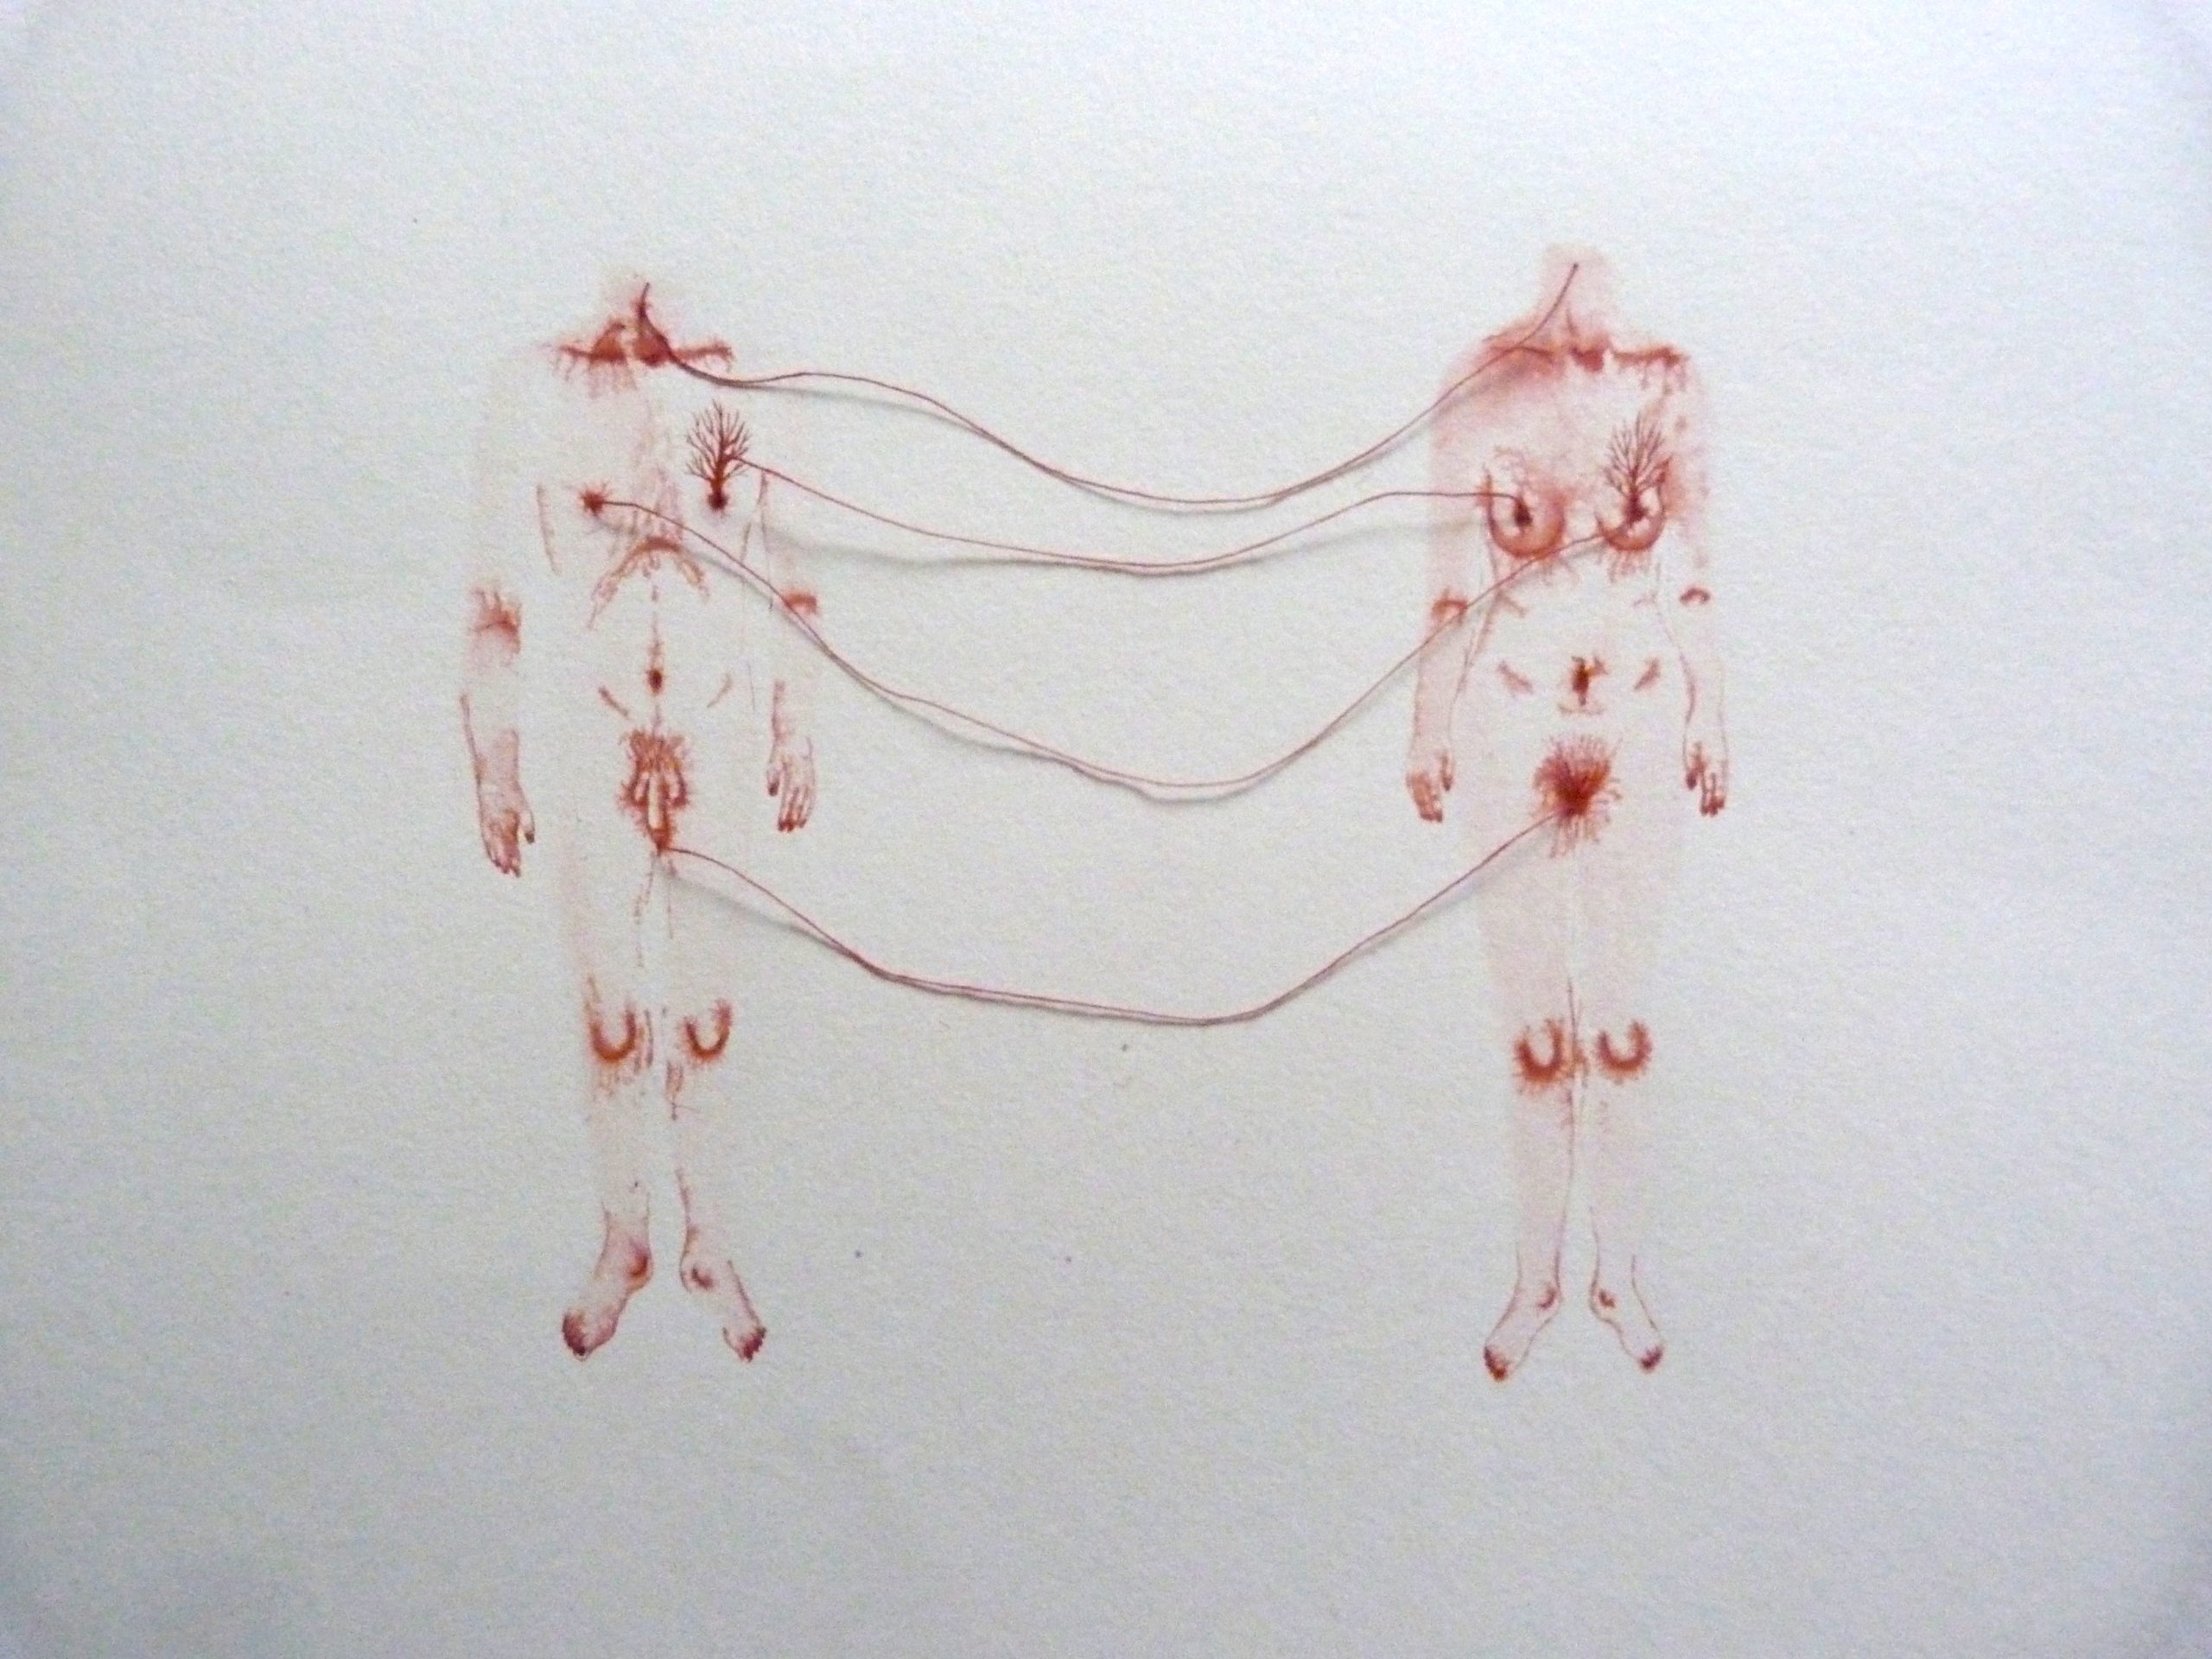 – Odonchimeg Davaadorj Sans titre, 2016 Encre de chine sur papier et fil 25 cm x 34 cm, Courtesy Ségolène Brossette Galerie